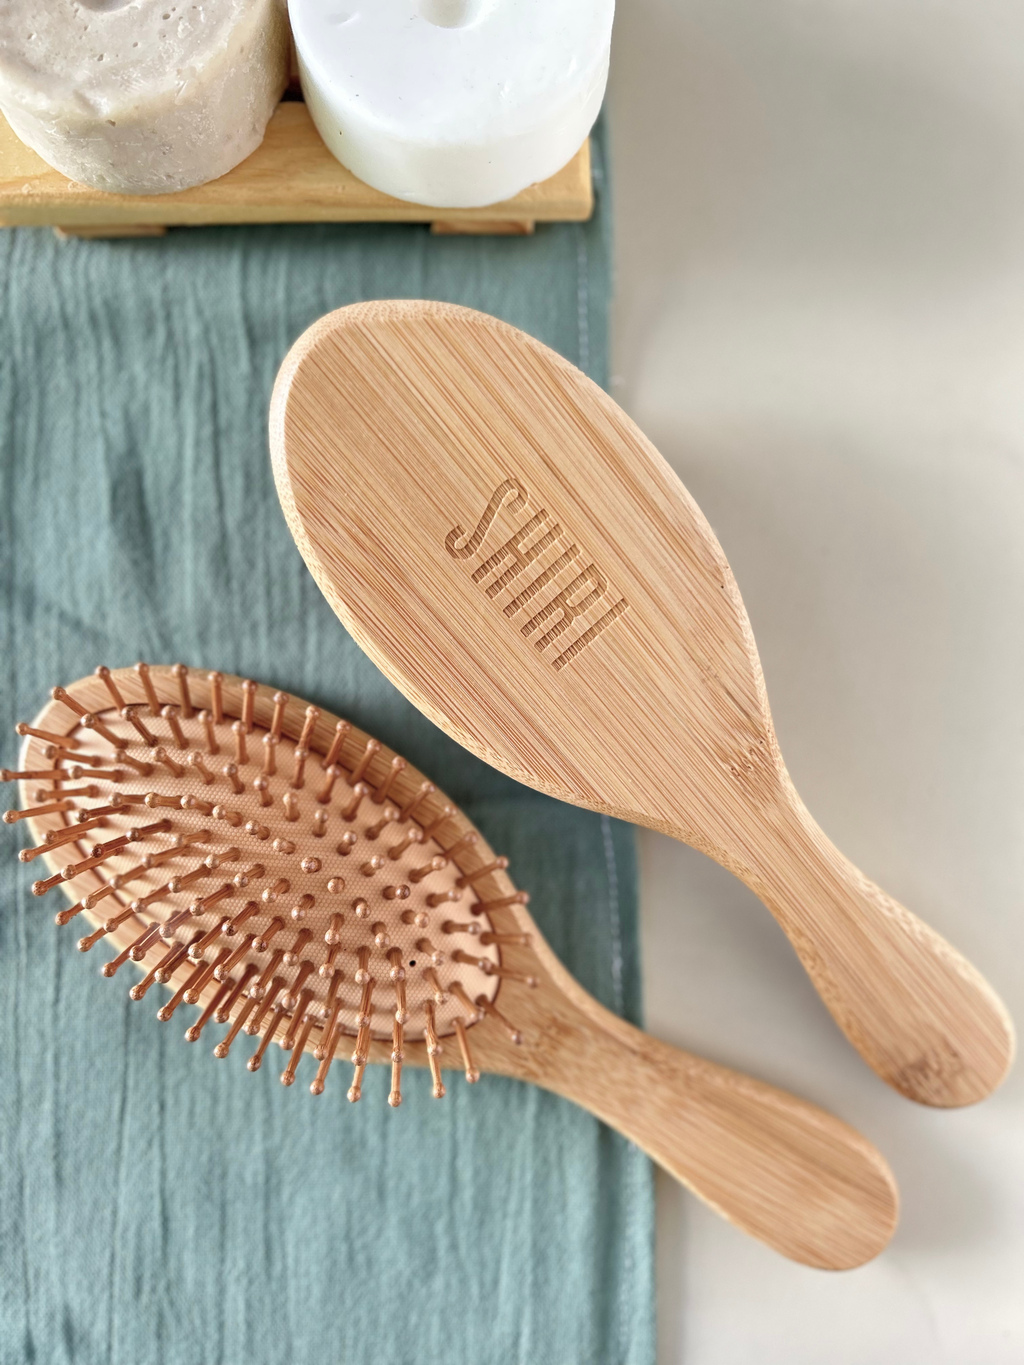 Peines y cepillos para el cabello - comprar online